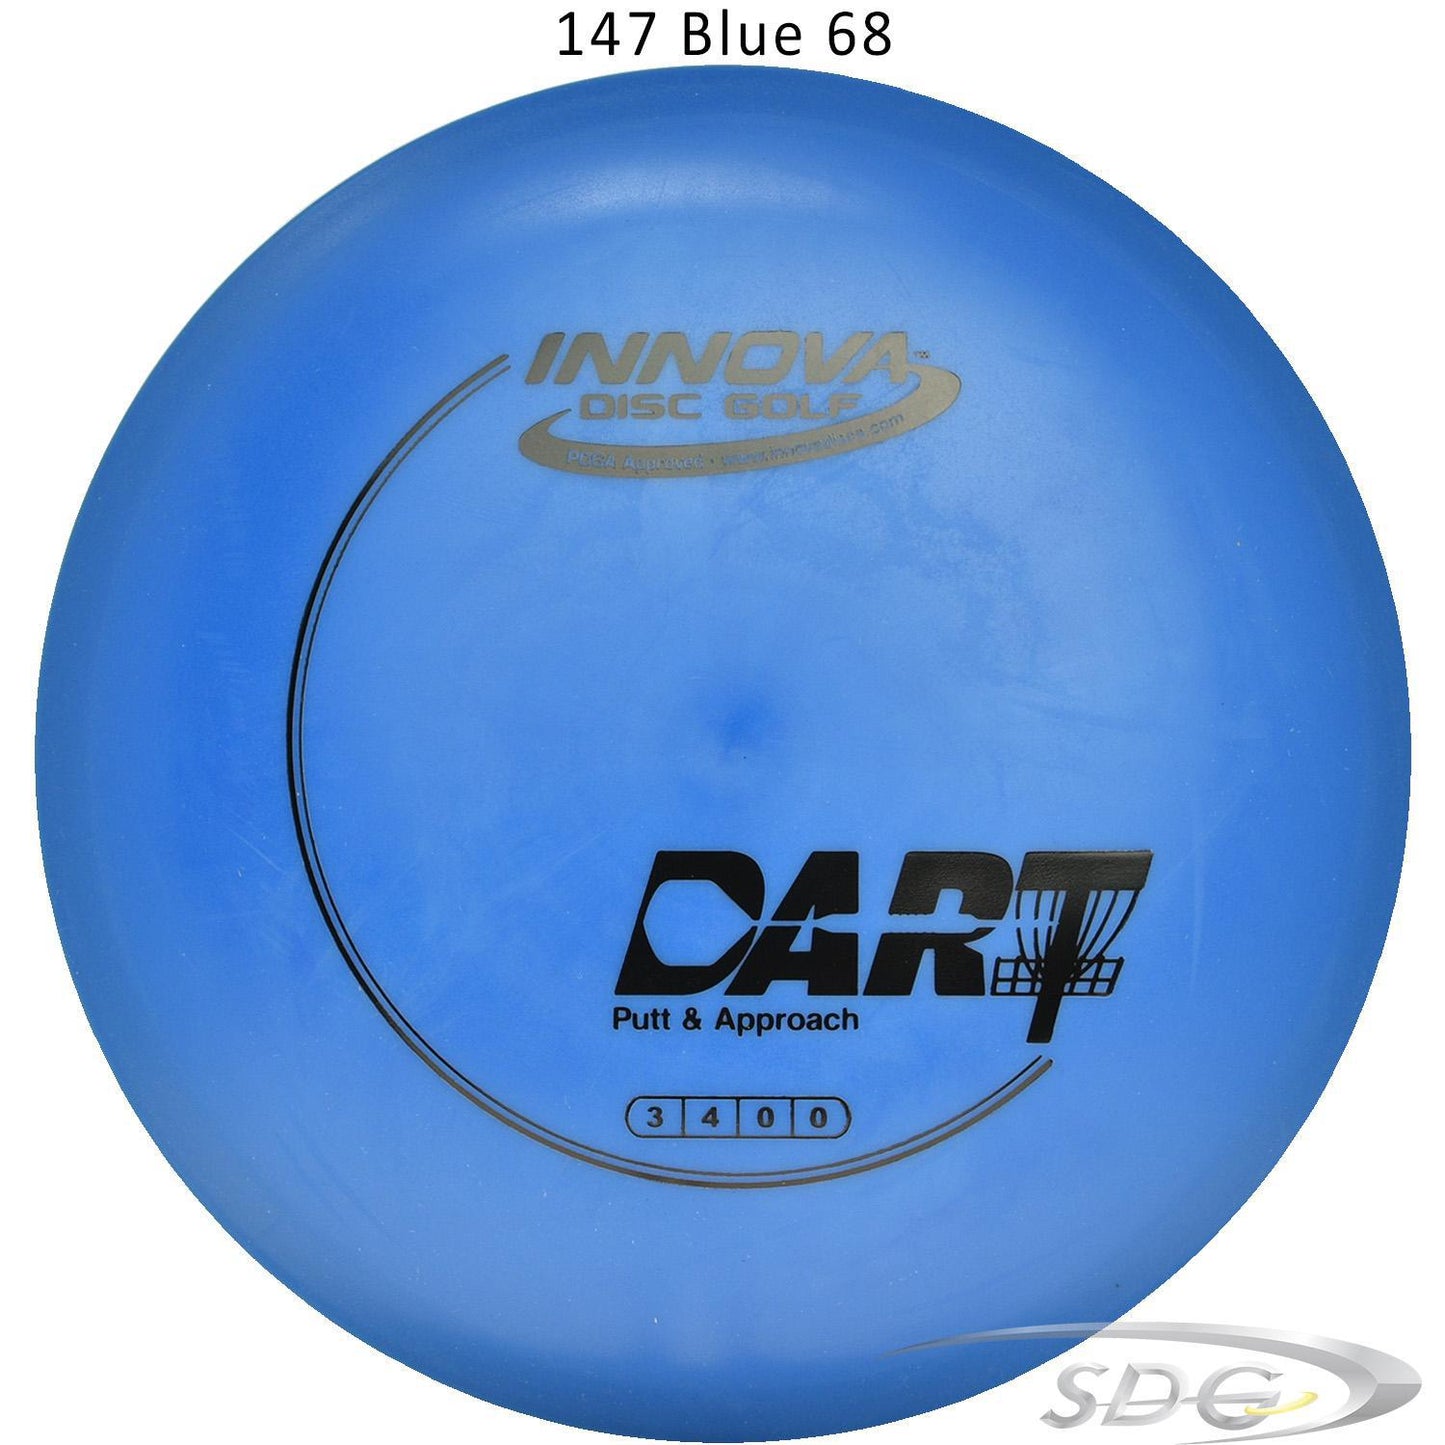 innova-dx-dart-disc-golf-putter 147 Blue 68